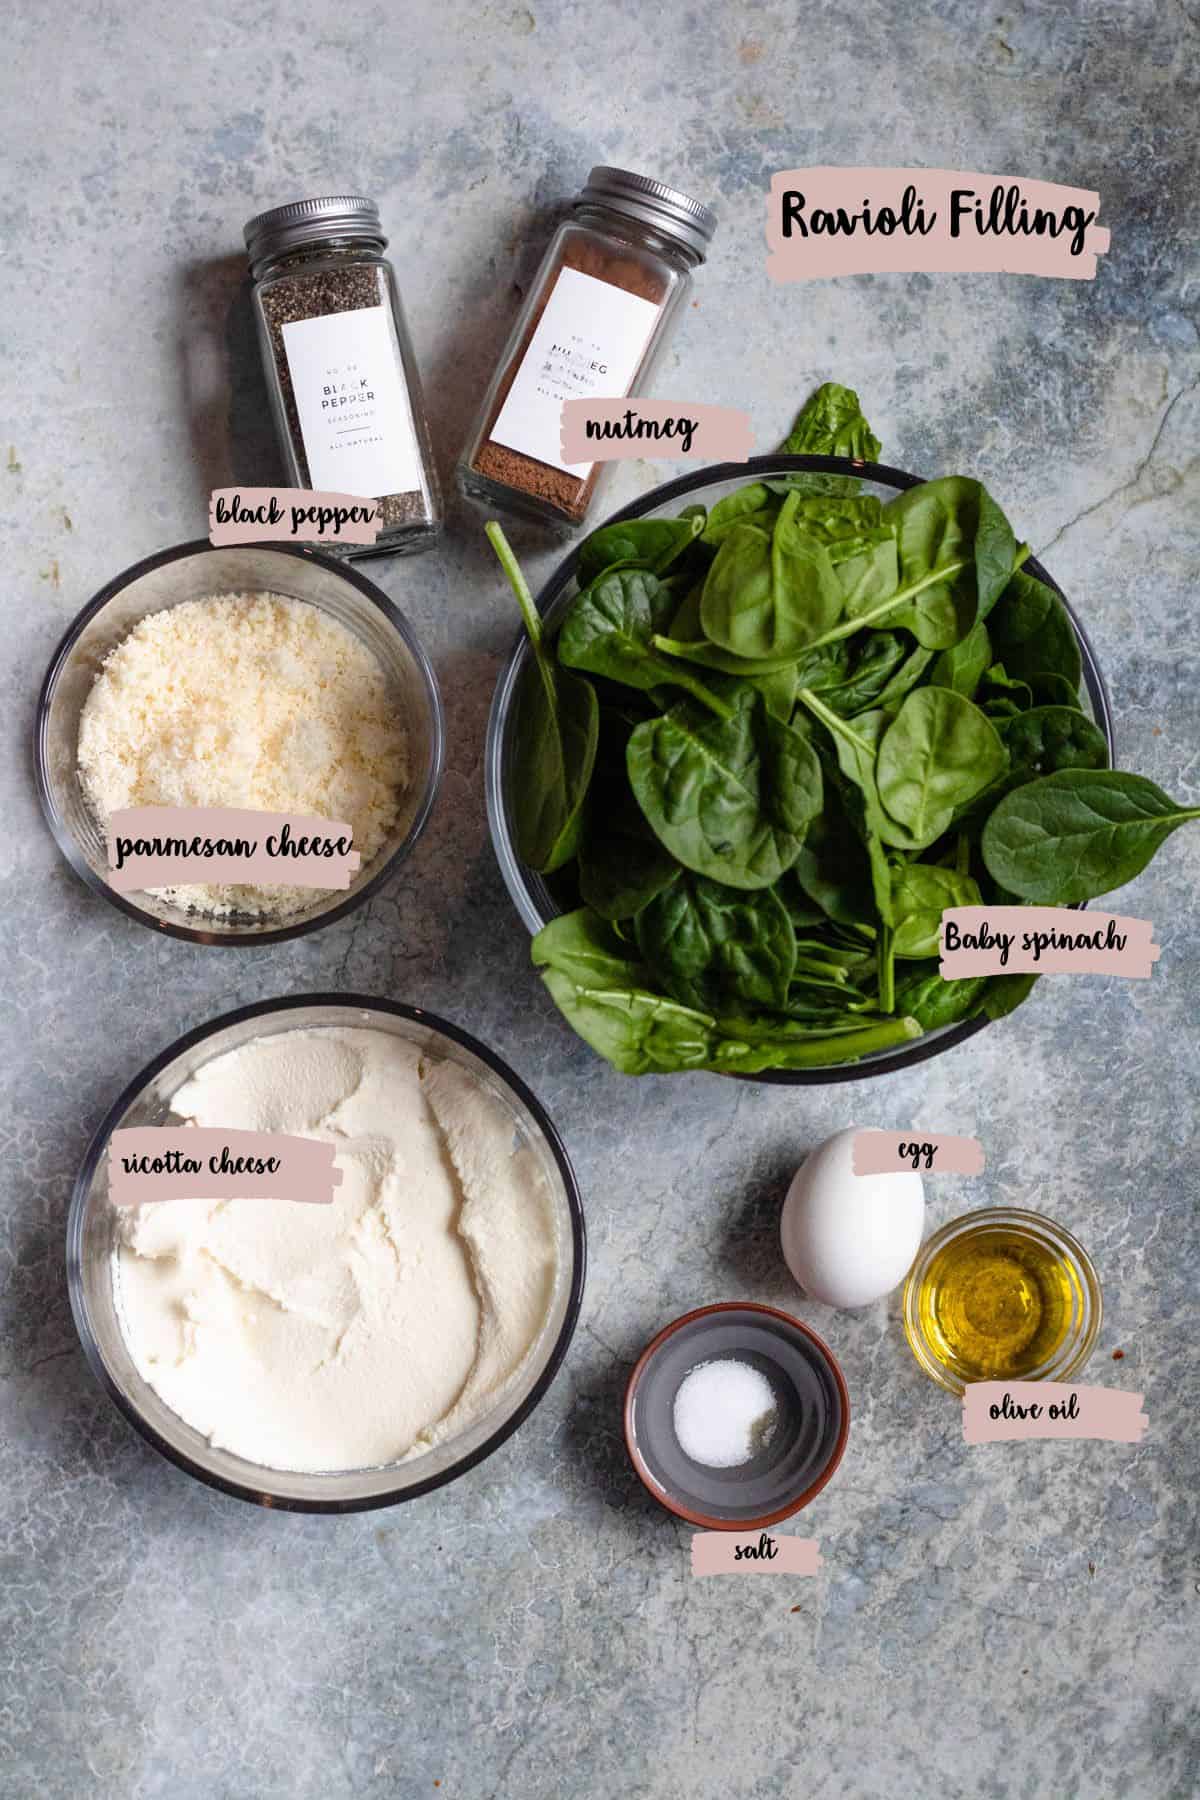 Ingredients needed to make ravioli filling recipe shown. 